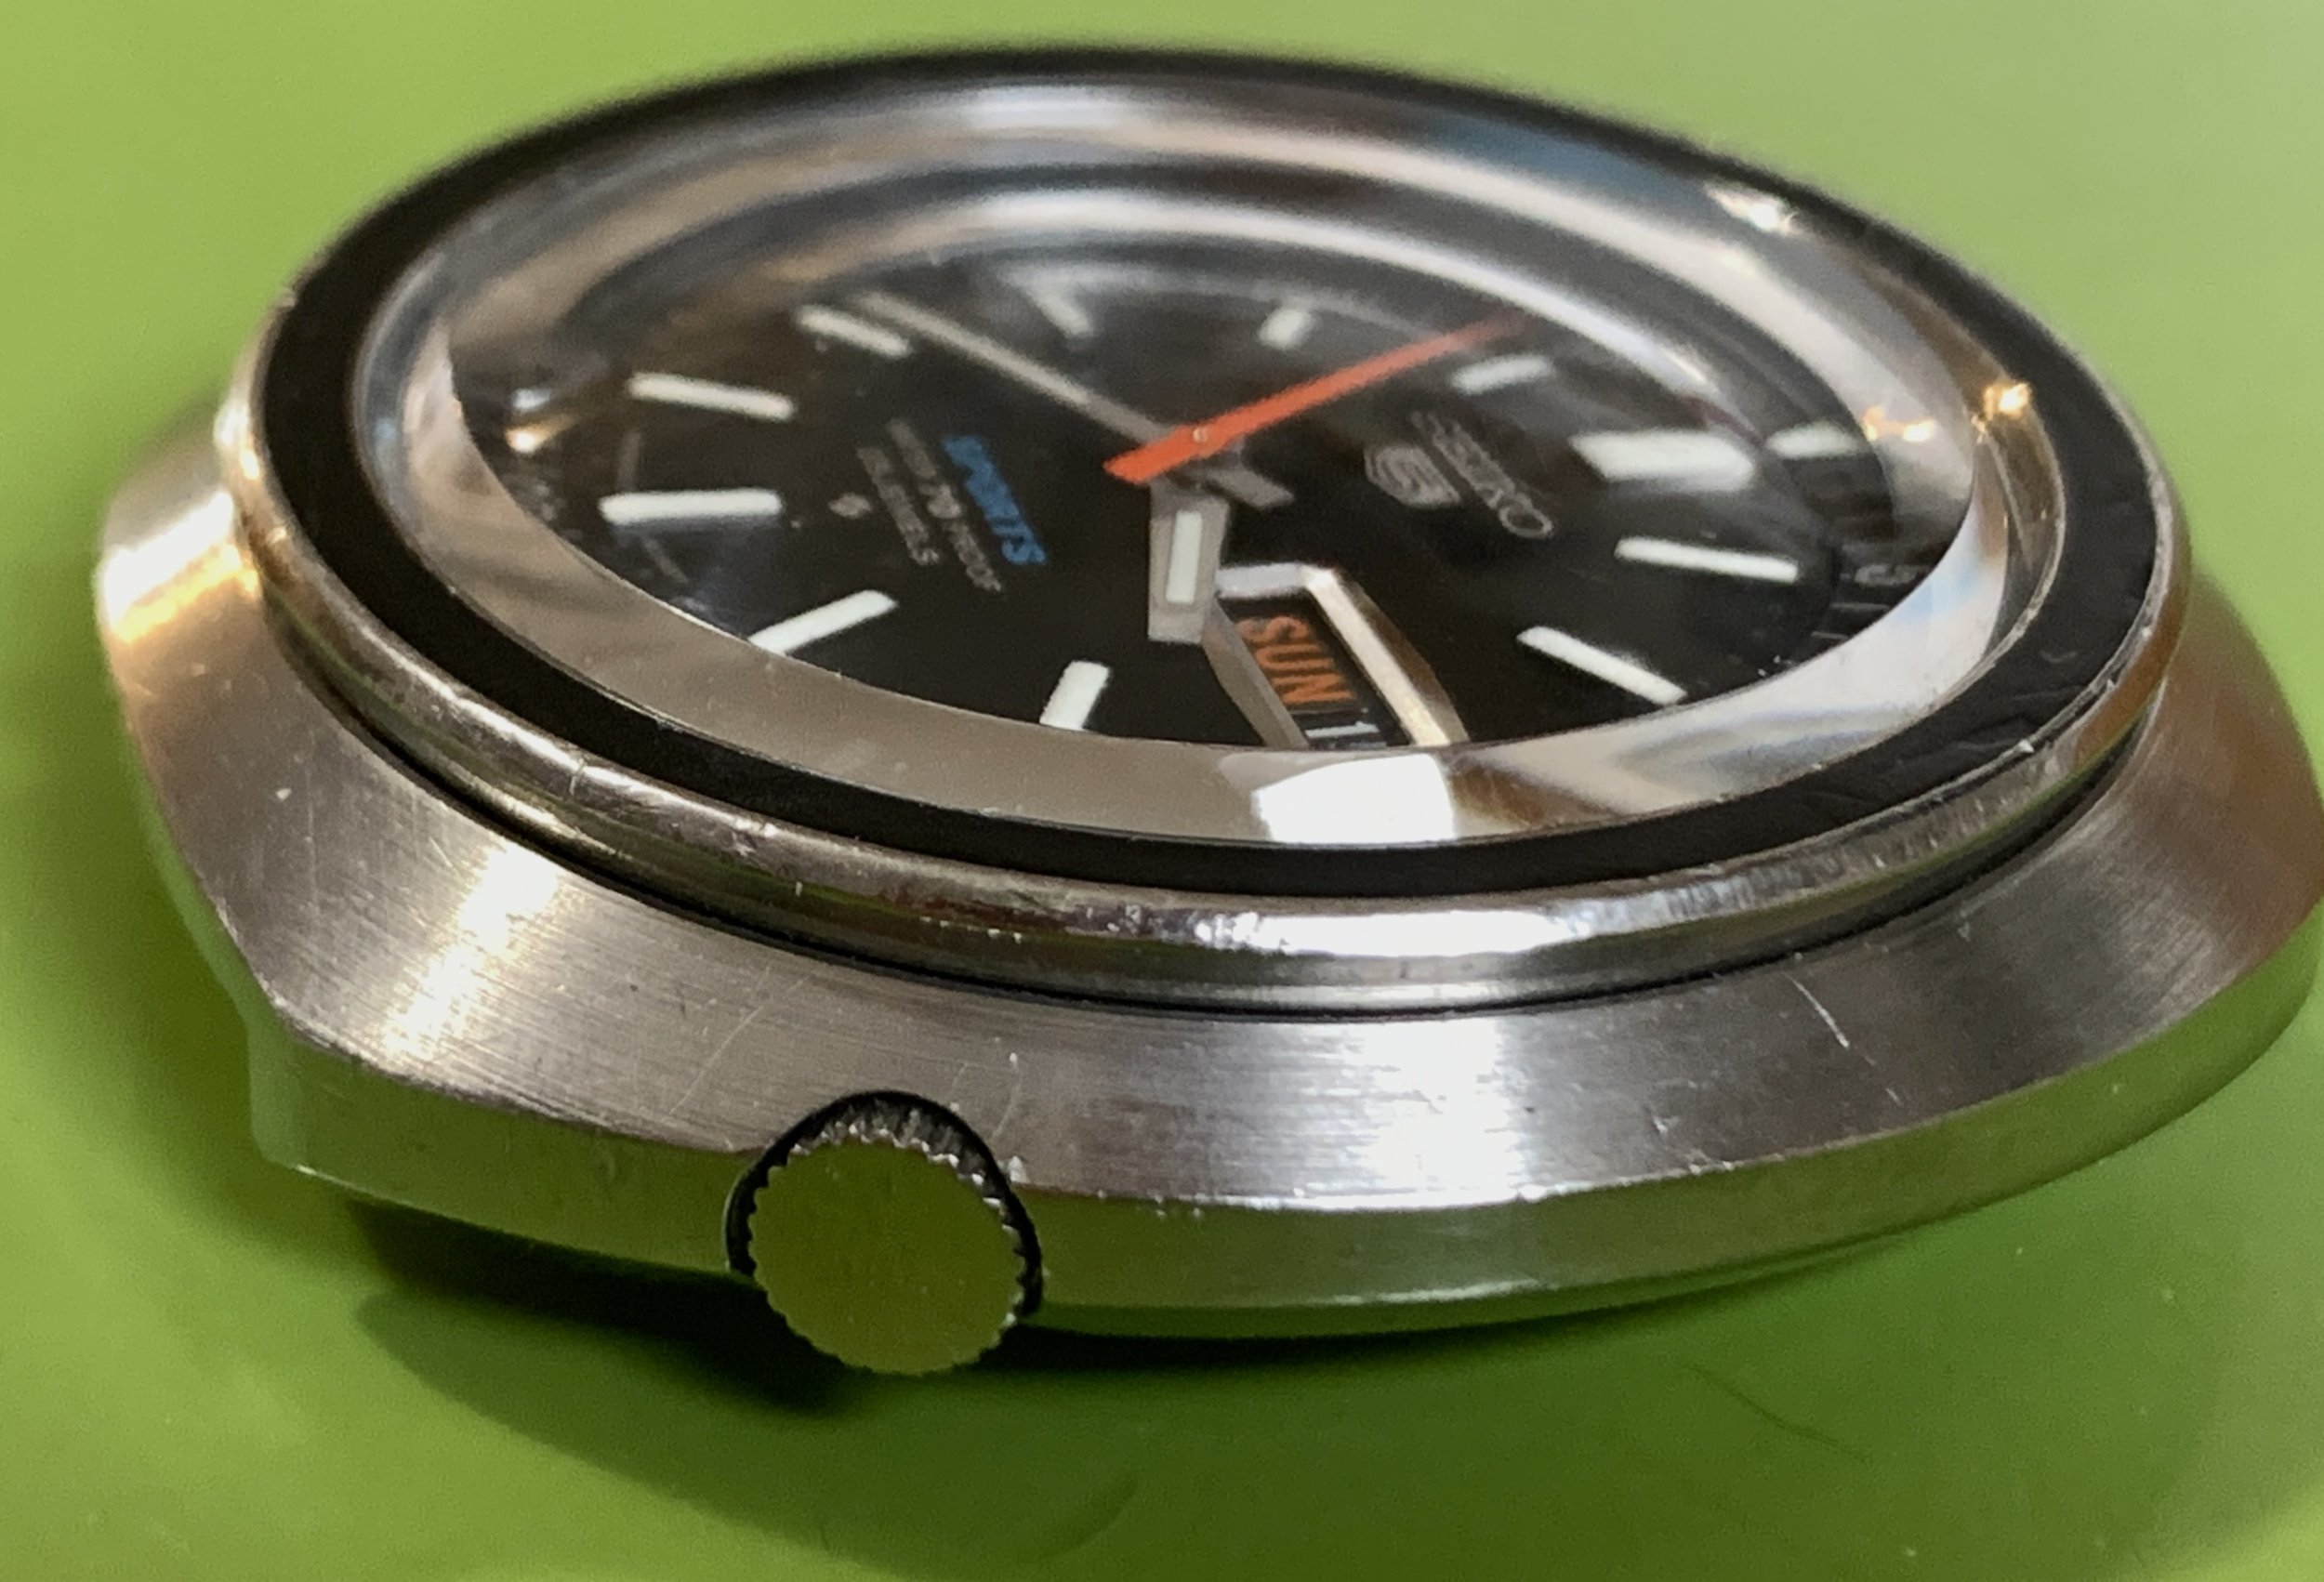 Seiko 6106-6040 Feb 1969 — Klein Vintage Watch